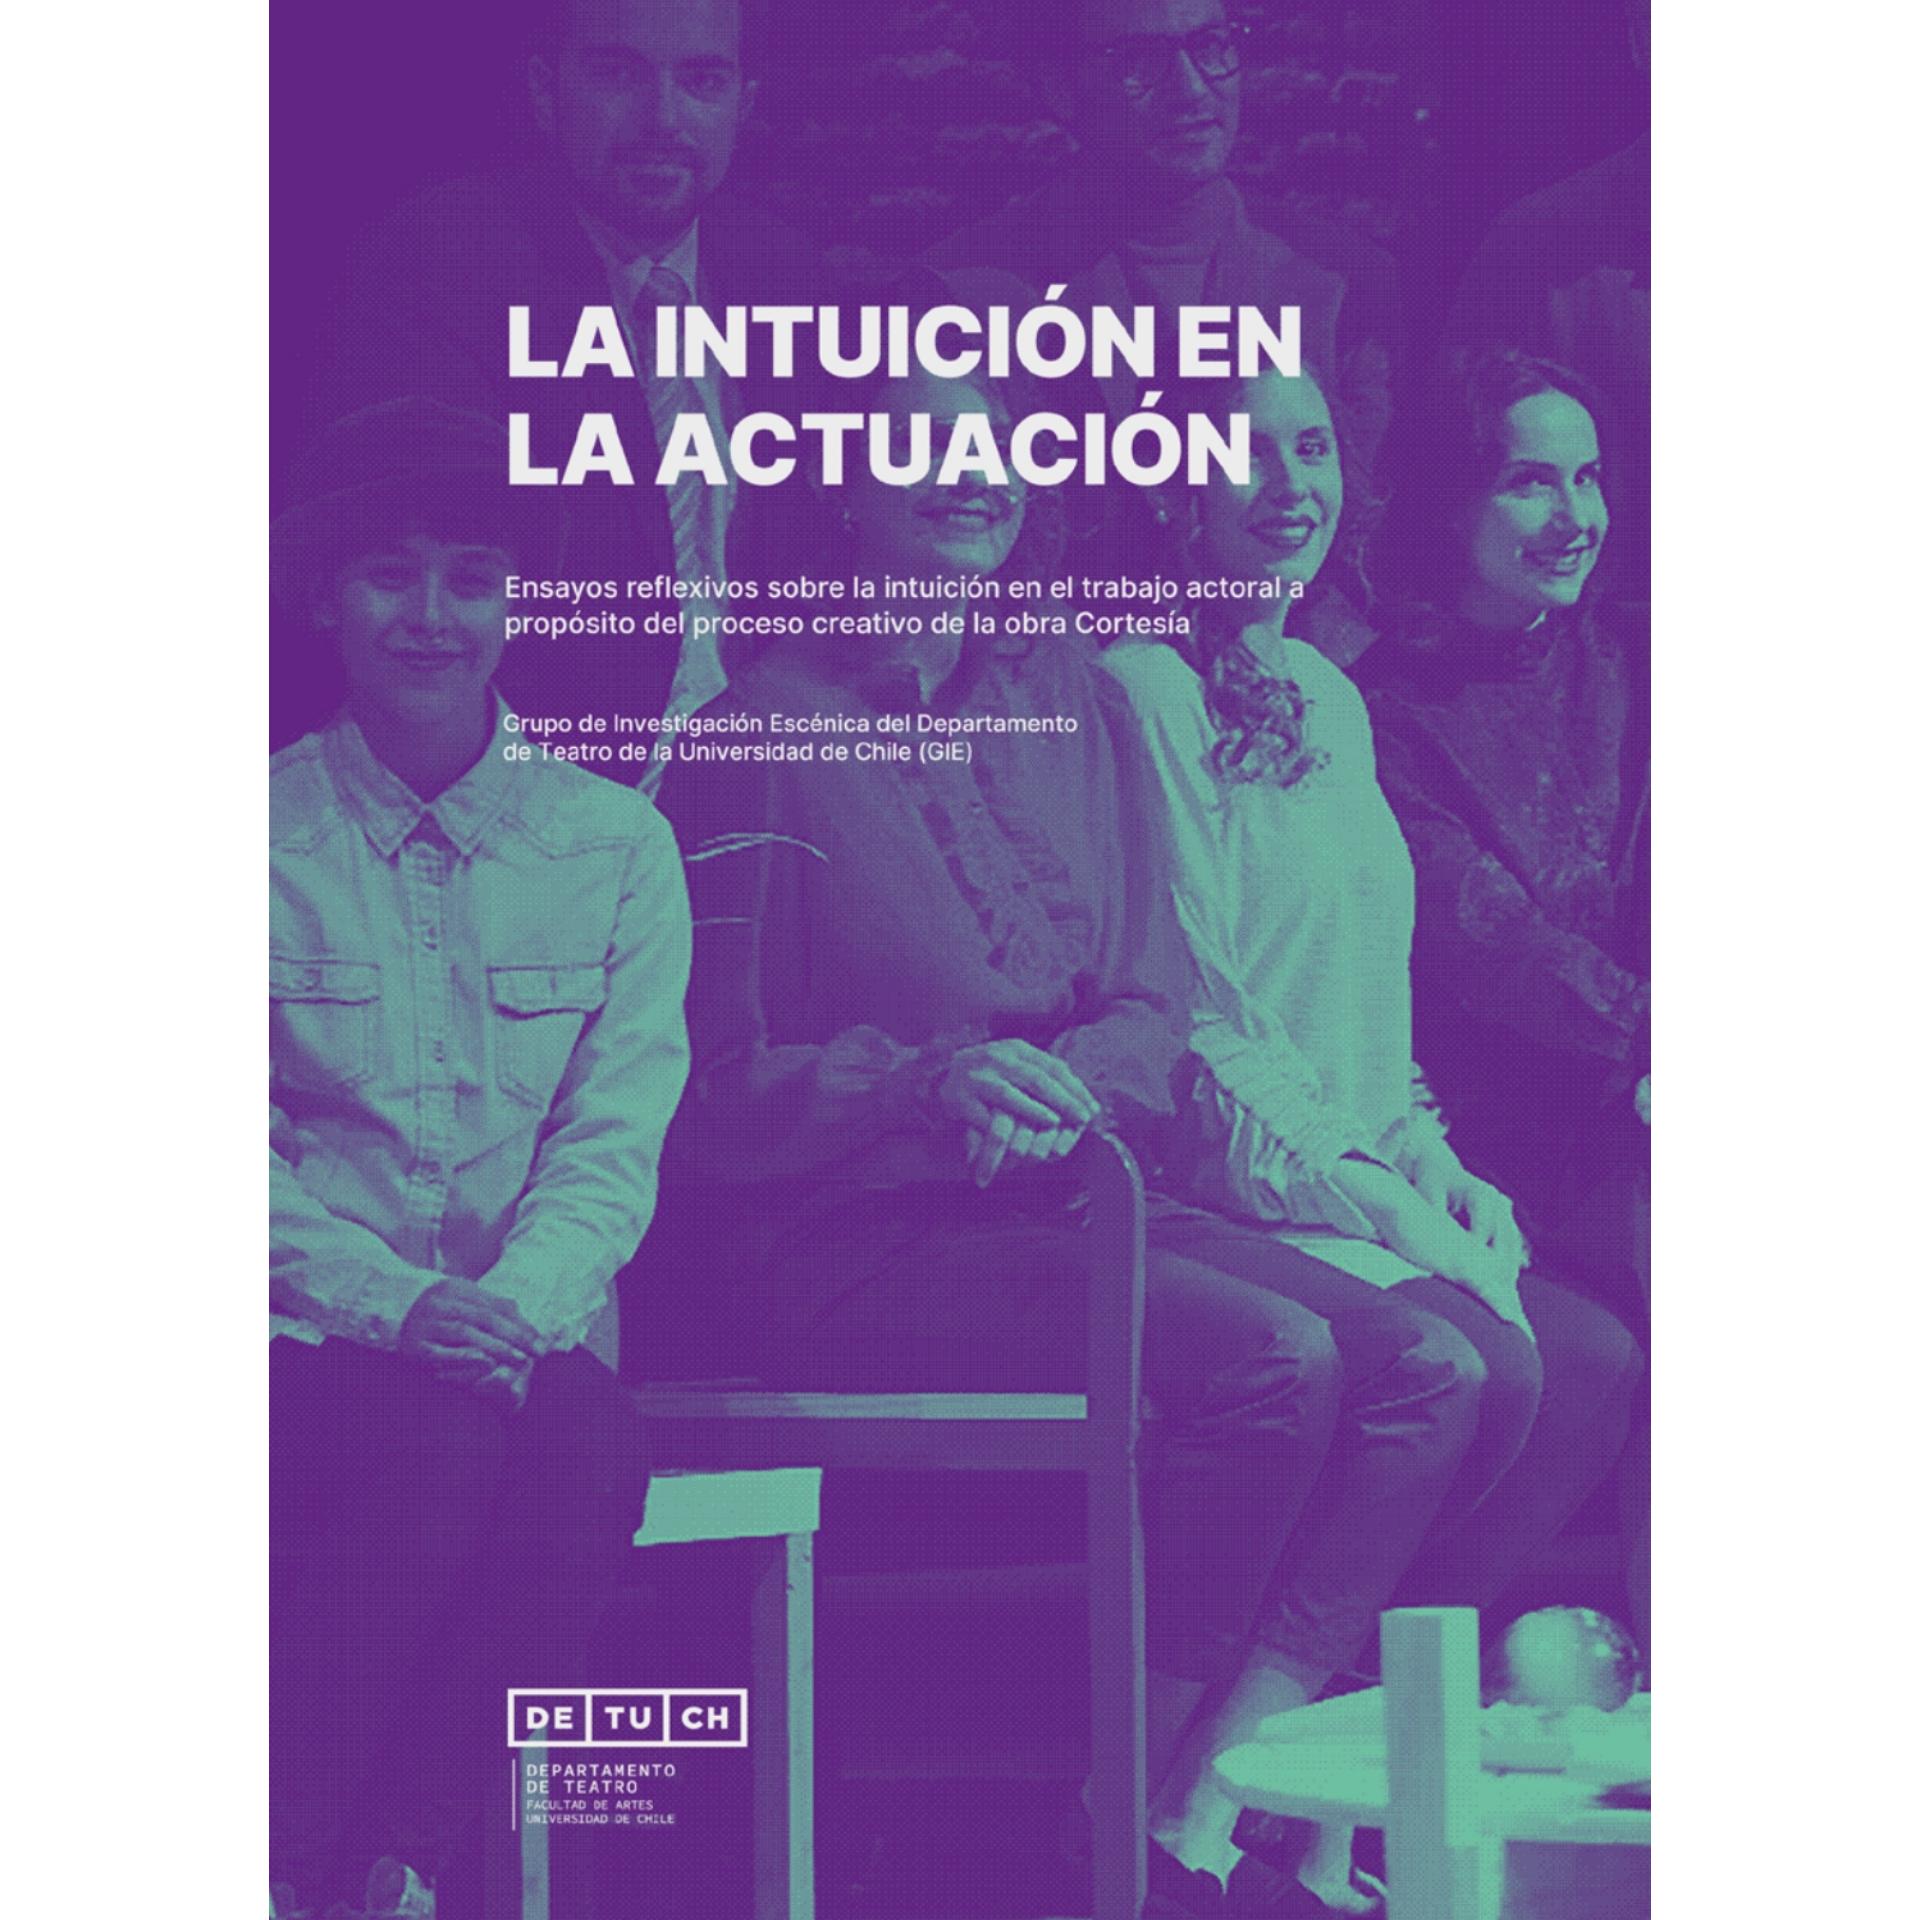 Libro "La intuición en la Actuación: Ensayos reflexivos sobre la intuición en el trabajo actoral a propósito del proceso creativo de la obra Cortesía"